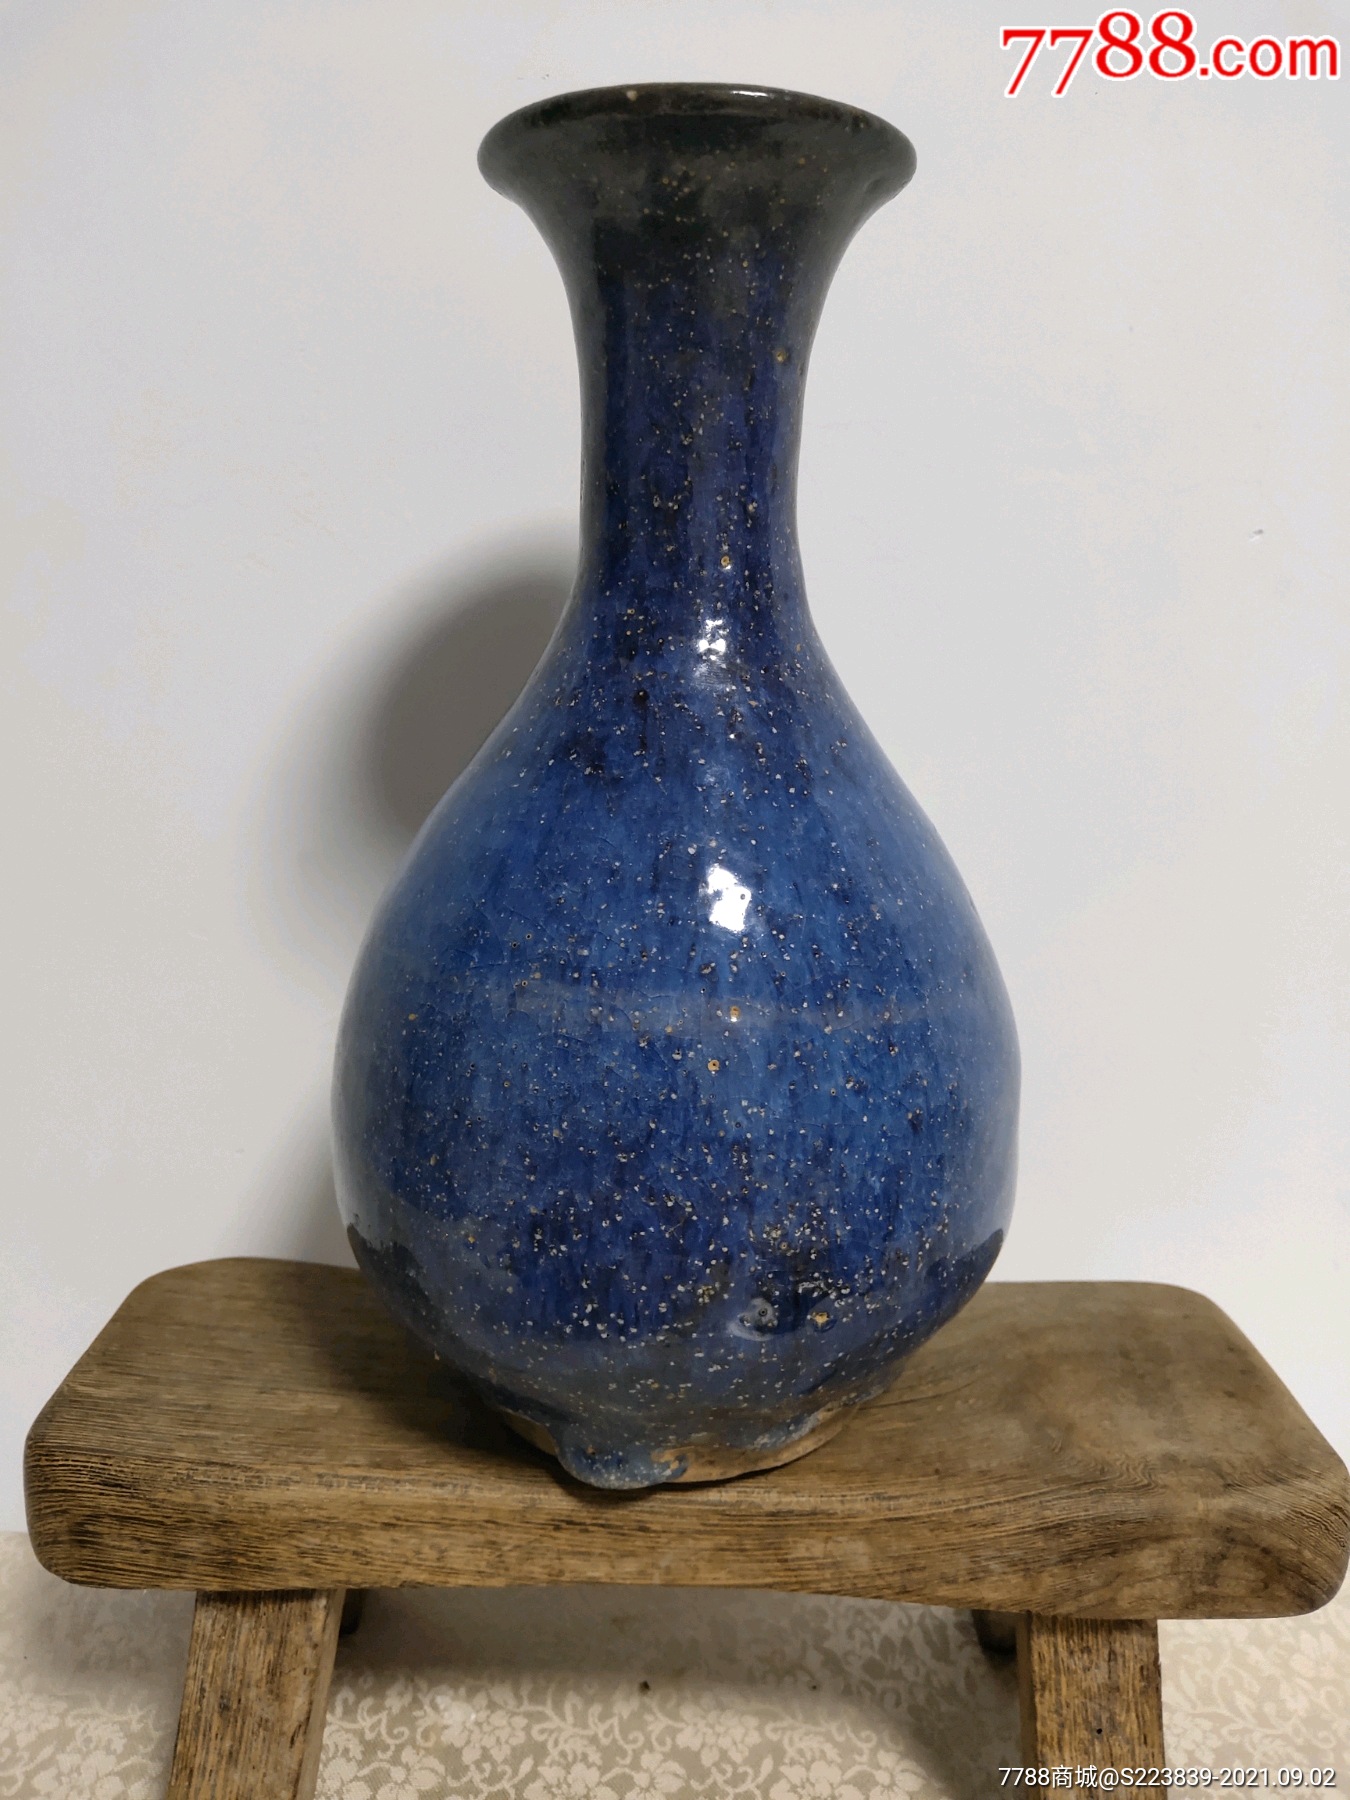 宋代老钧瓷酒瓶:早期精品,收藏展览.品好如图